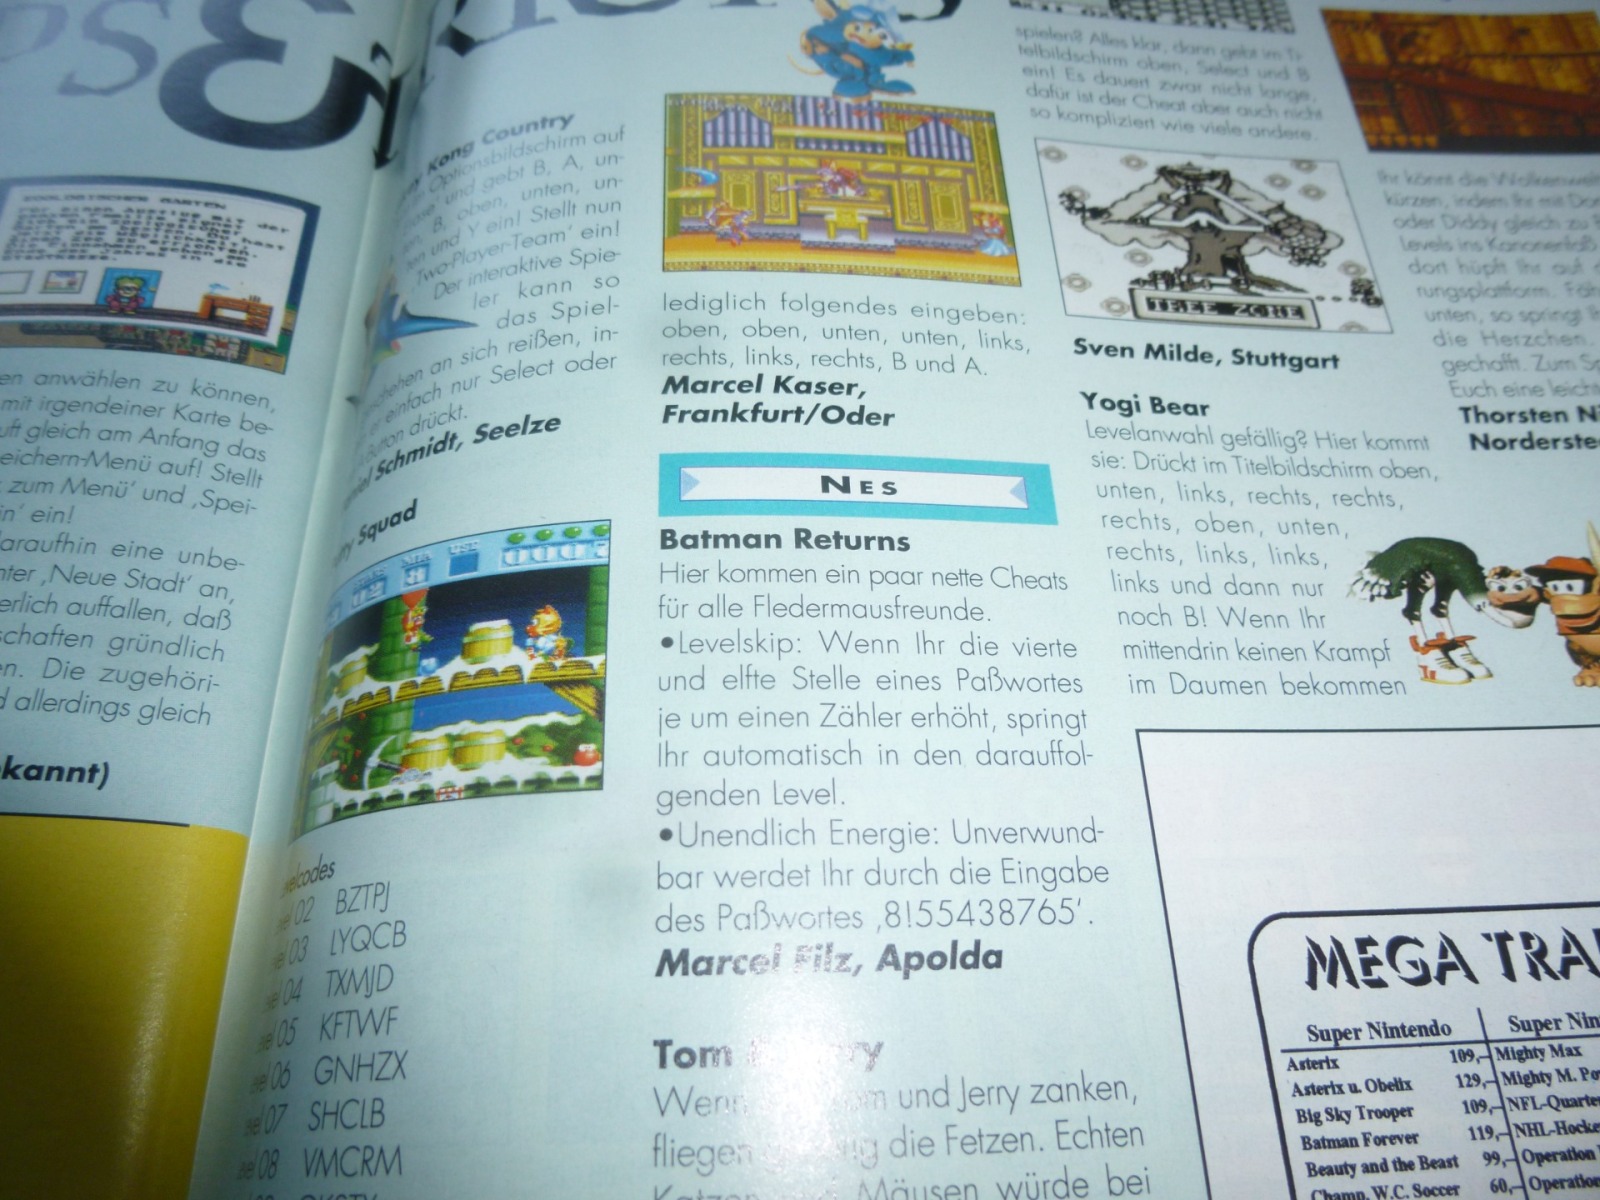 TOTAL Das unabhängige Magazin - 100% Nintendo - Ausgabe 10/95 1995 20